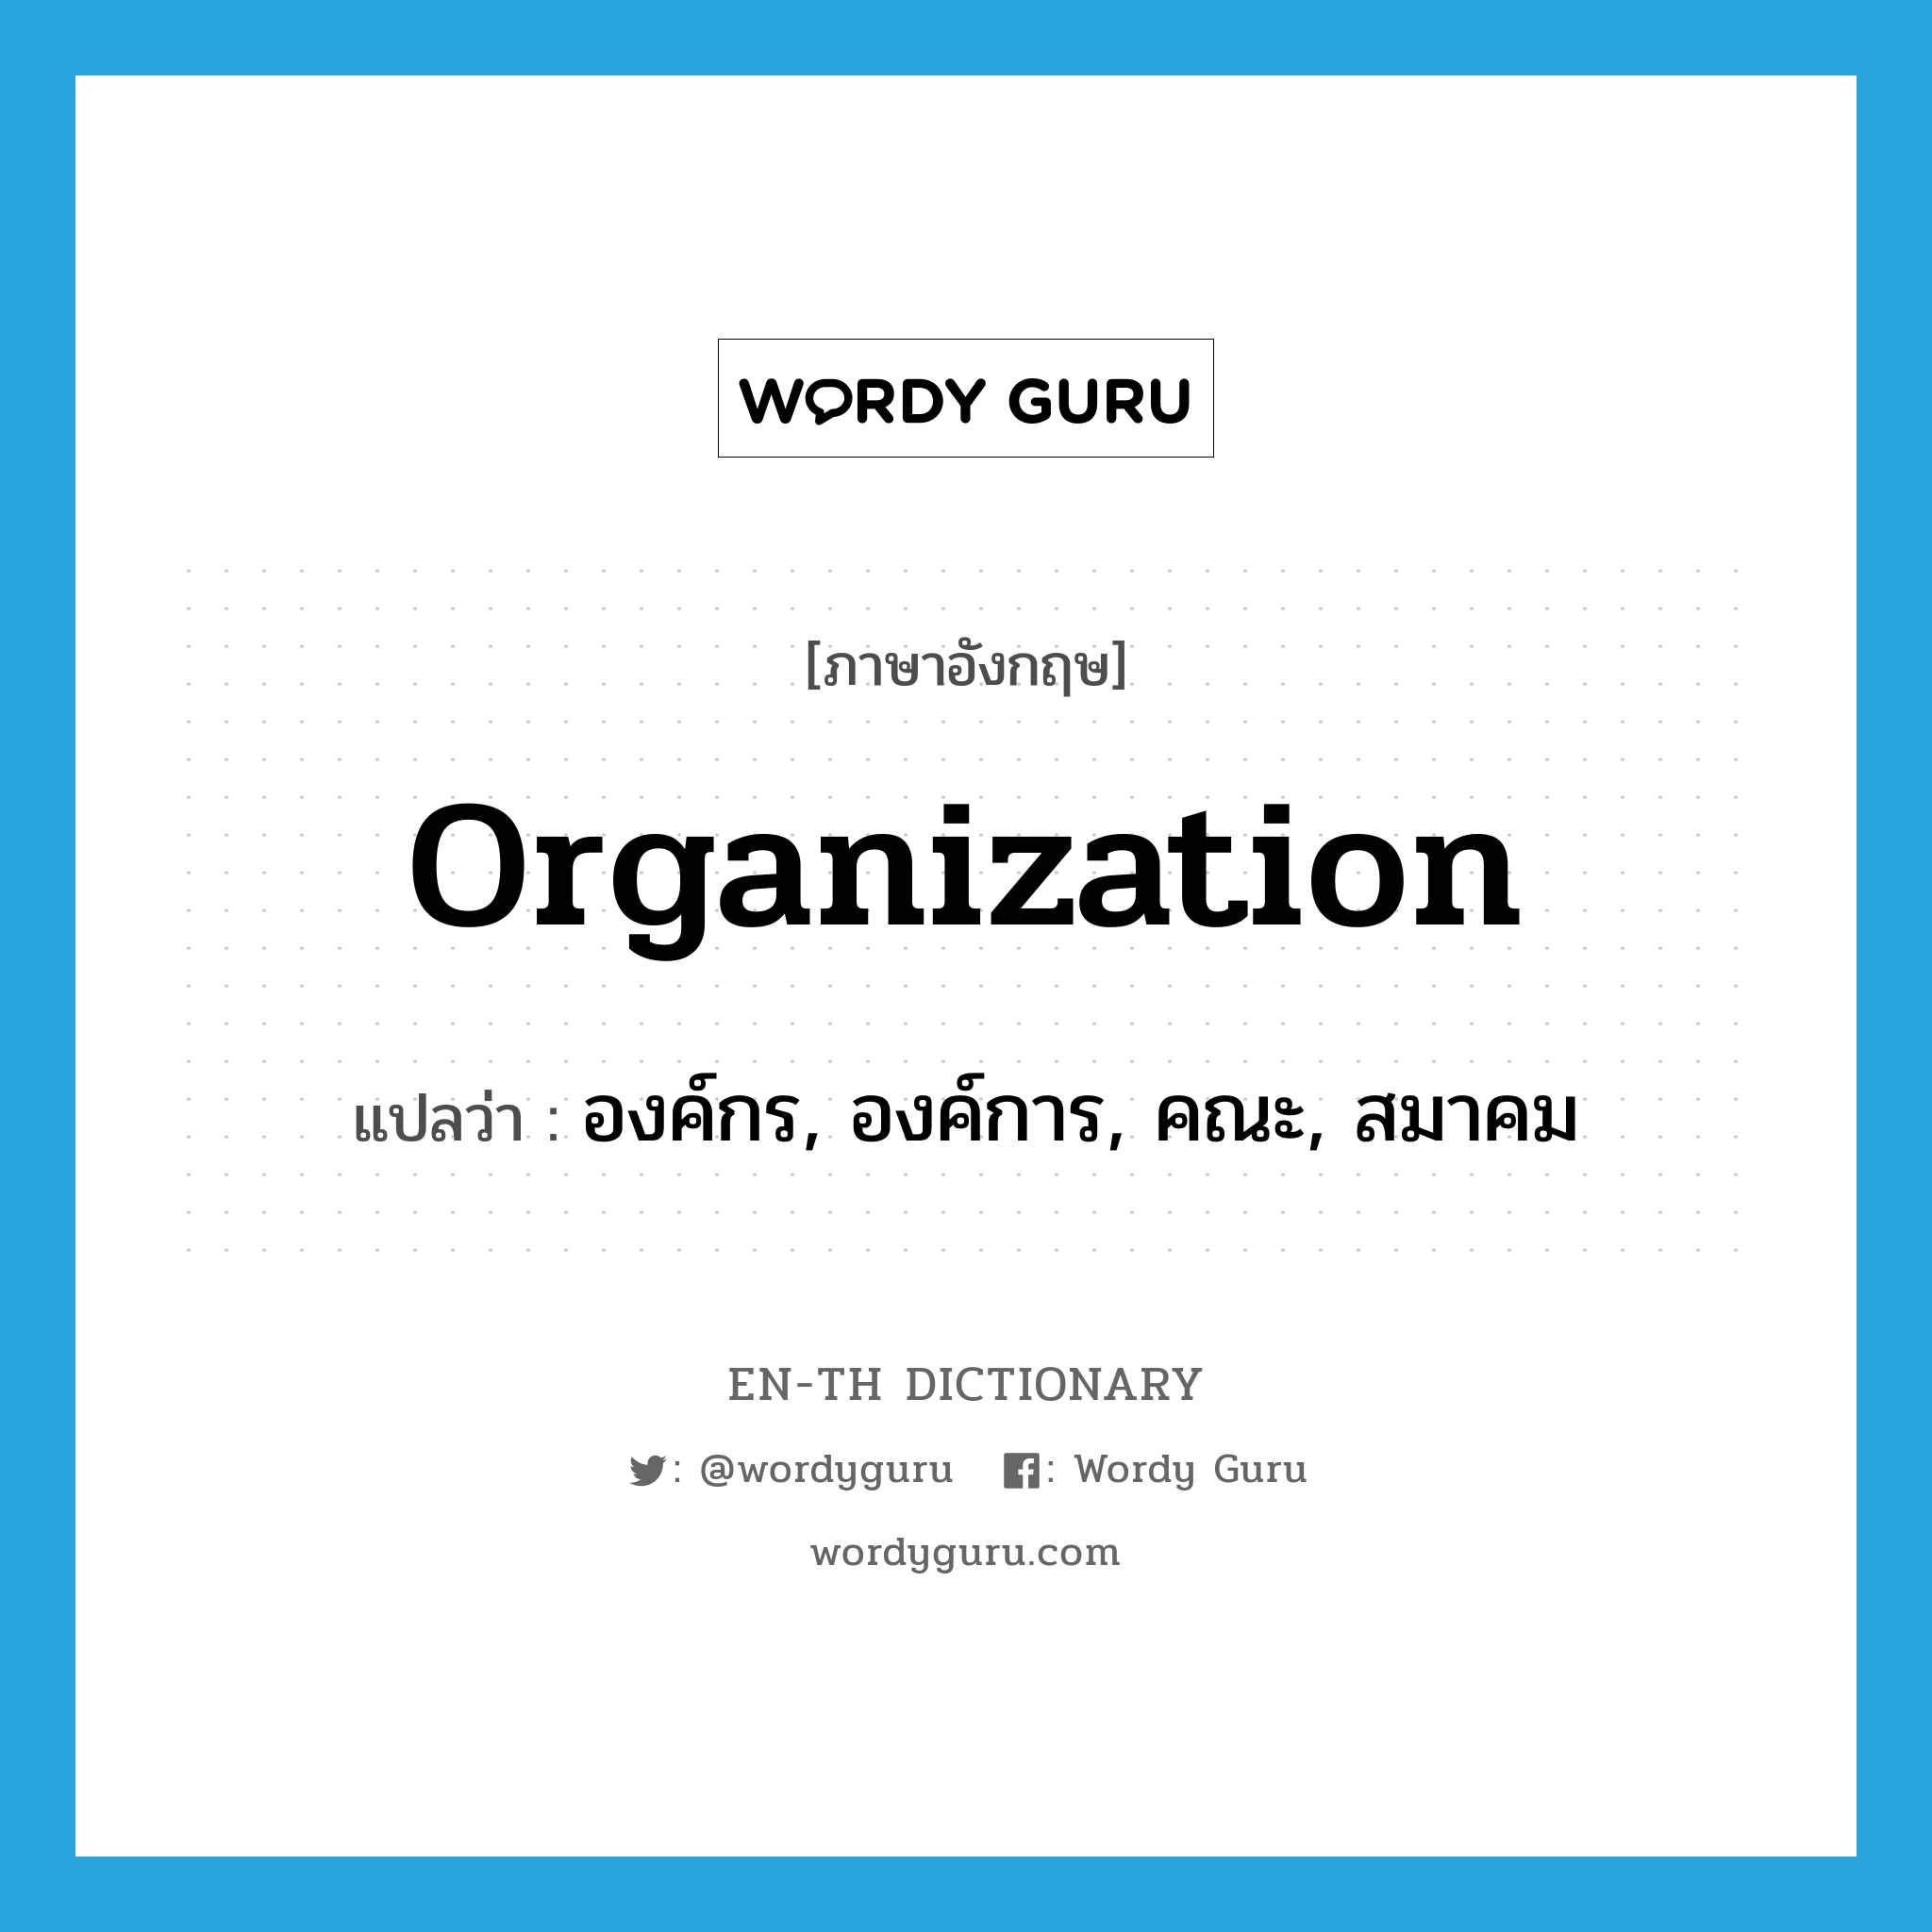 organization แปลว่า?, คำศัพท์ภาษาอังกฤษ organization แปลว่า องค์กร, องค์การ, คณะ, สมาคม ประเภท N หมวด N